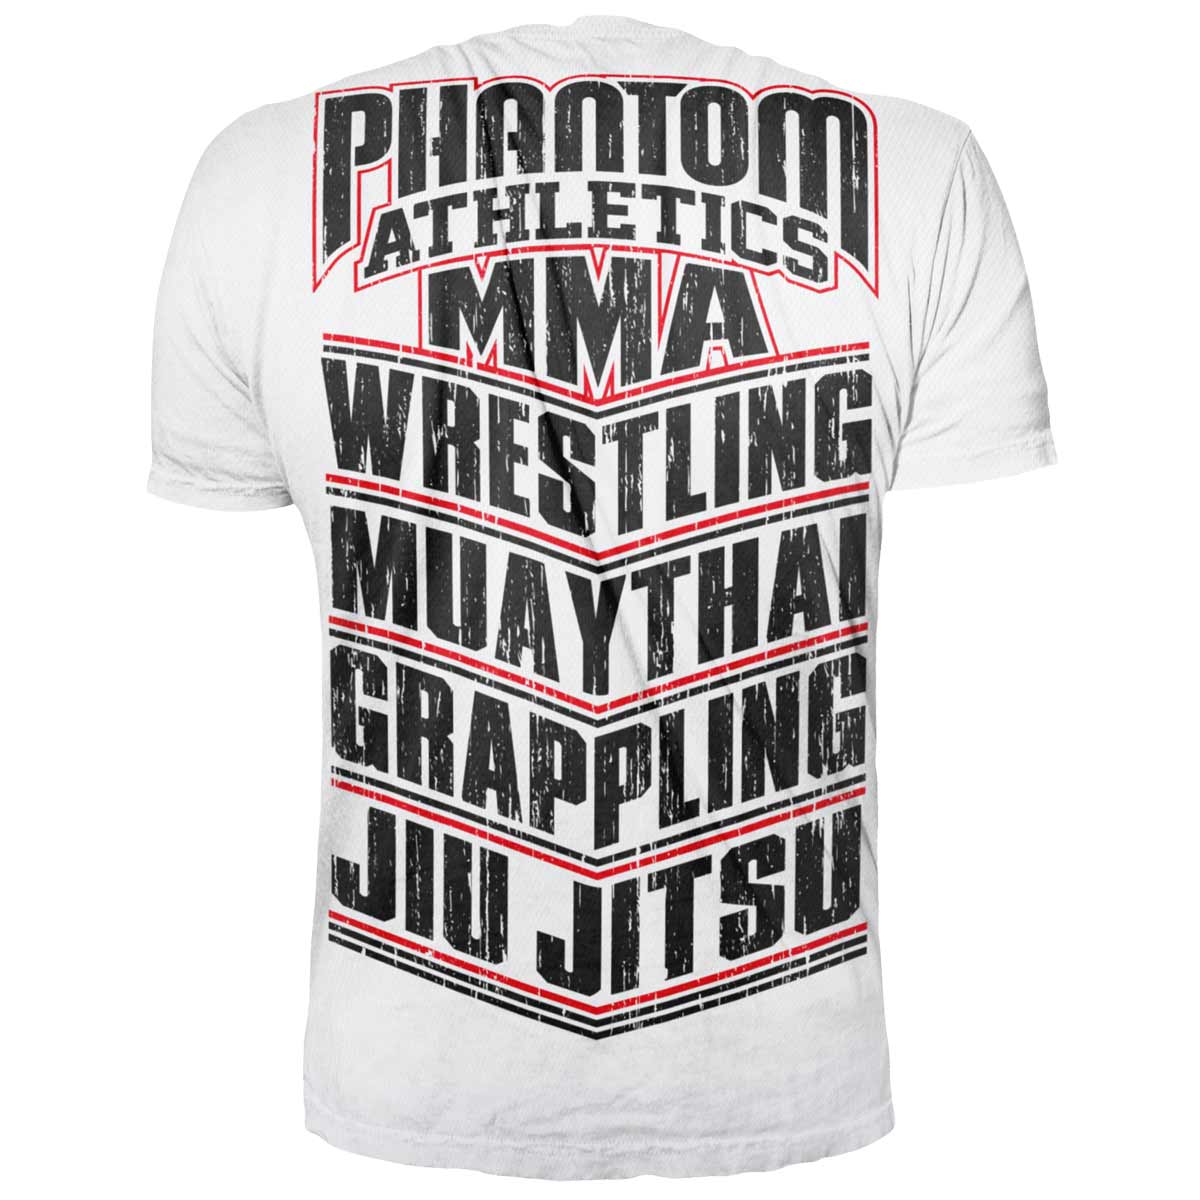 Phantom T-Shirt für alle Kampfsportler. Mit MMA, WRESTLING, MUAY THAI, GRAPPLING, JIU JITSU Schriftzug. Ideal für dein Fight Training.